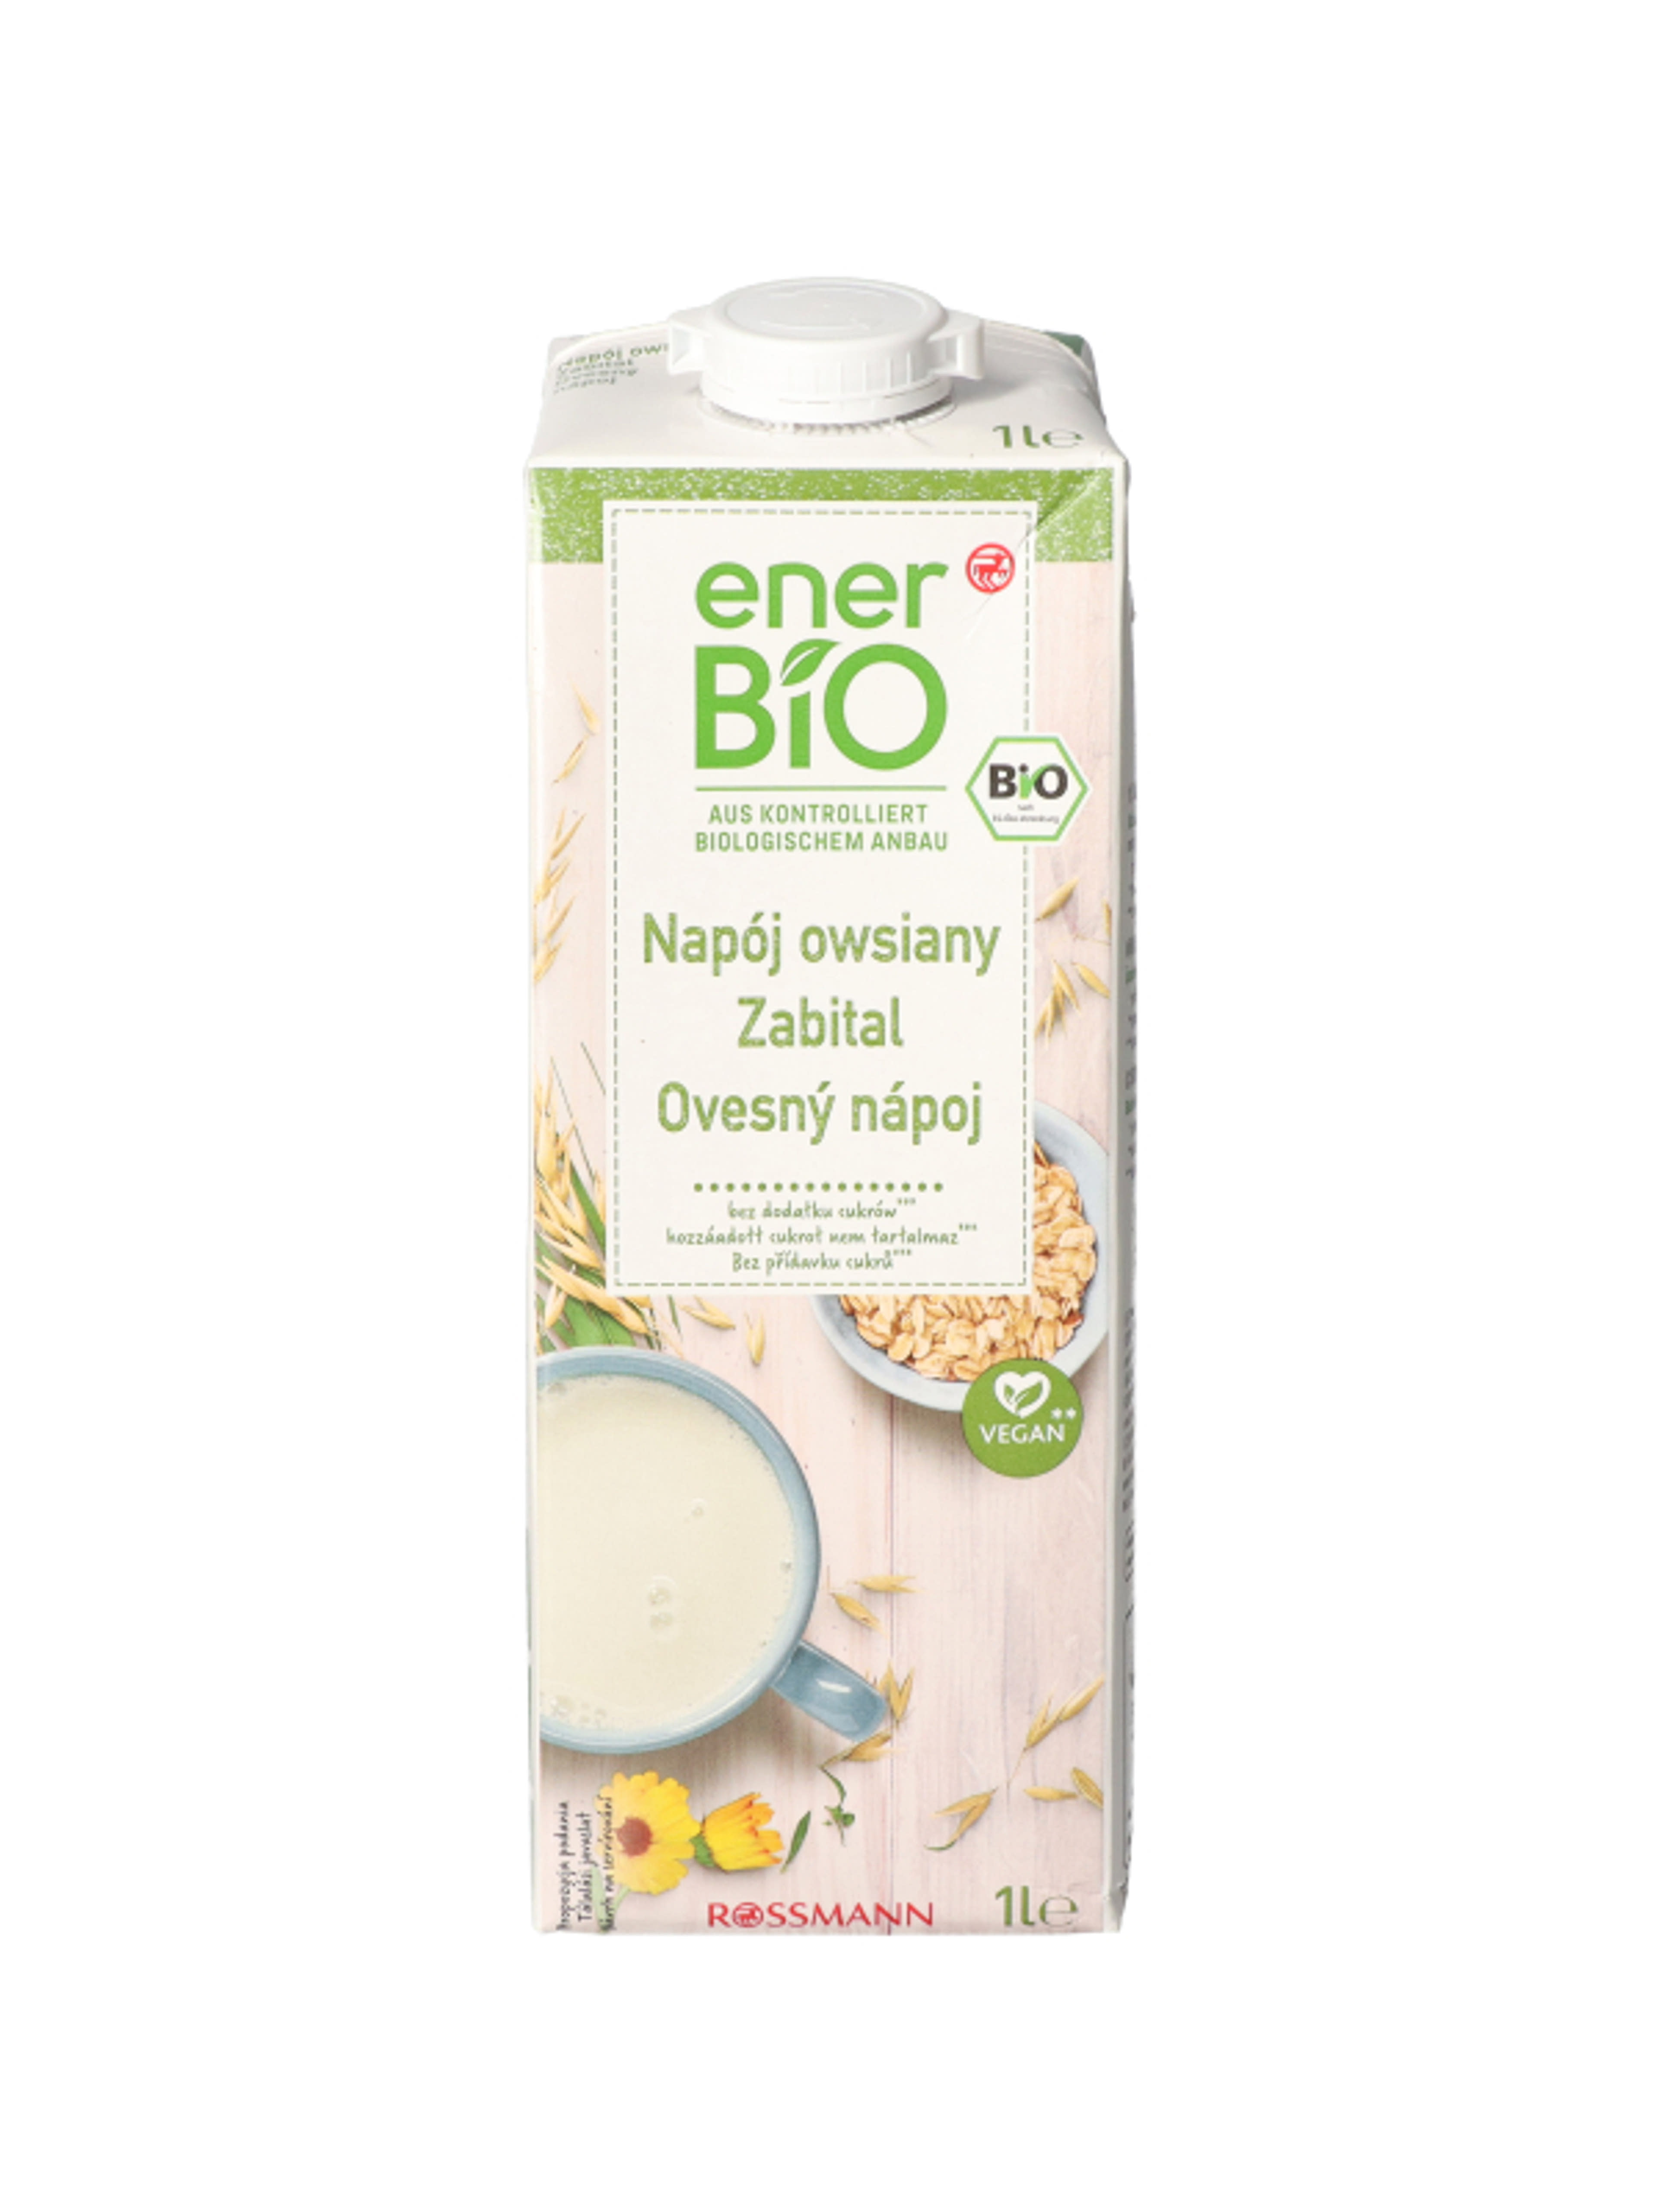 enerBio Zabital - 1 l
hozzáadott cukrot nem tartalmaz
vegán-1